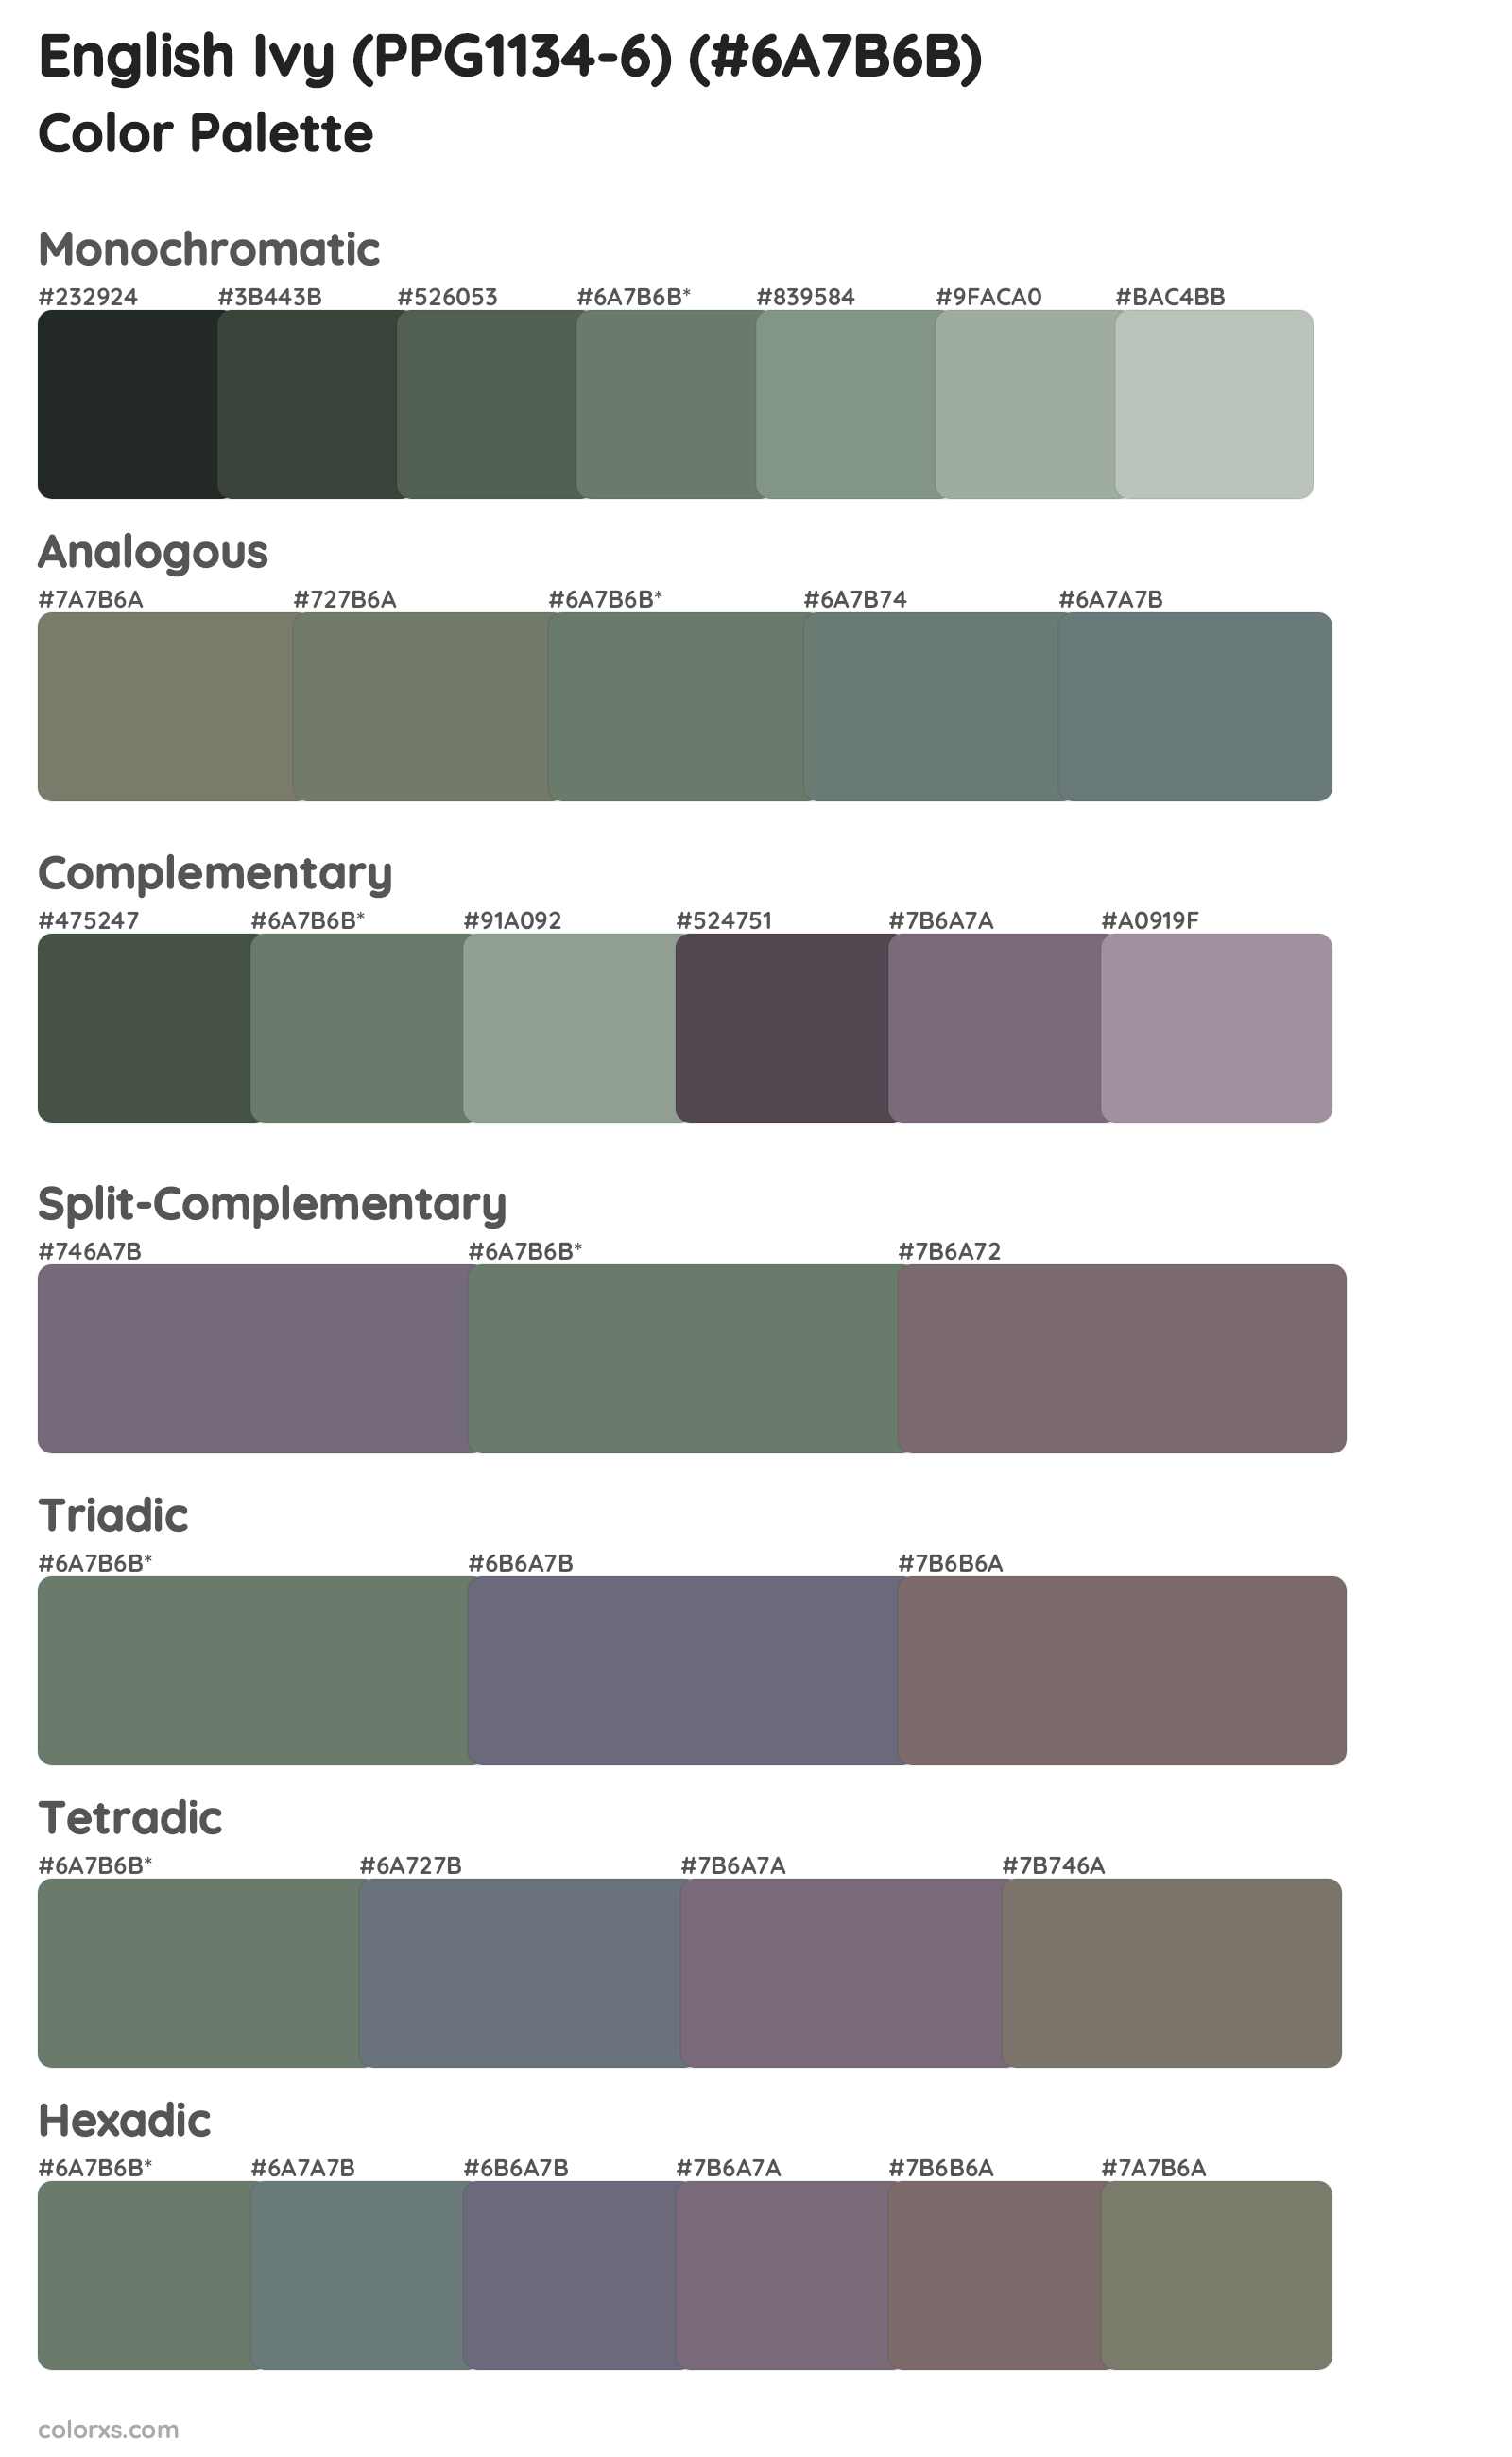 English Ivy (PPG1134-6) Color Scheme Palettes